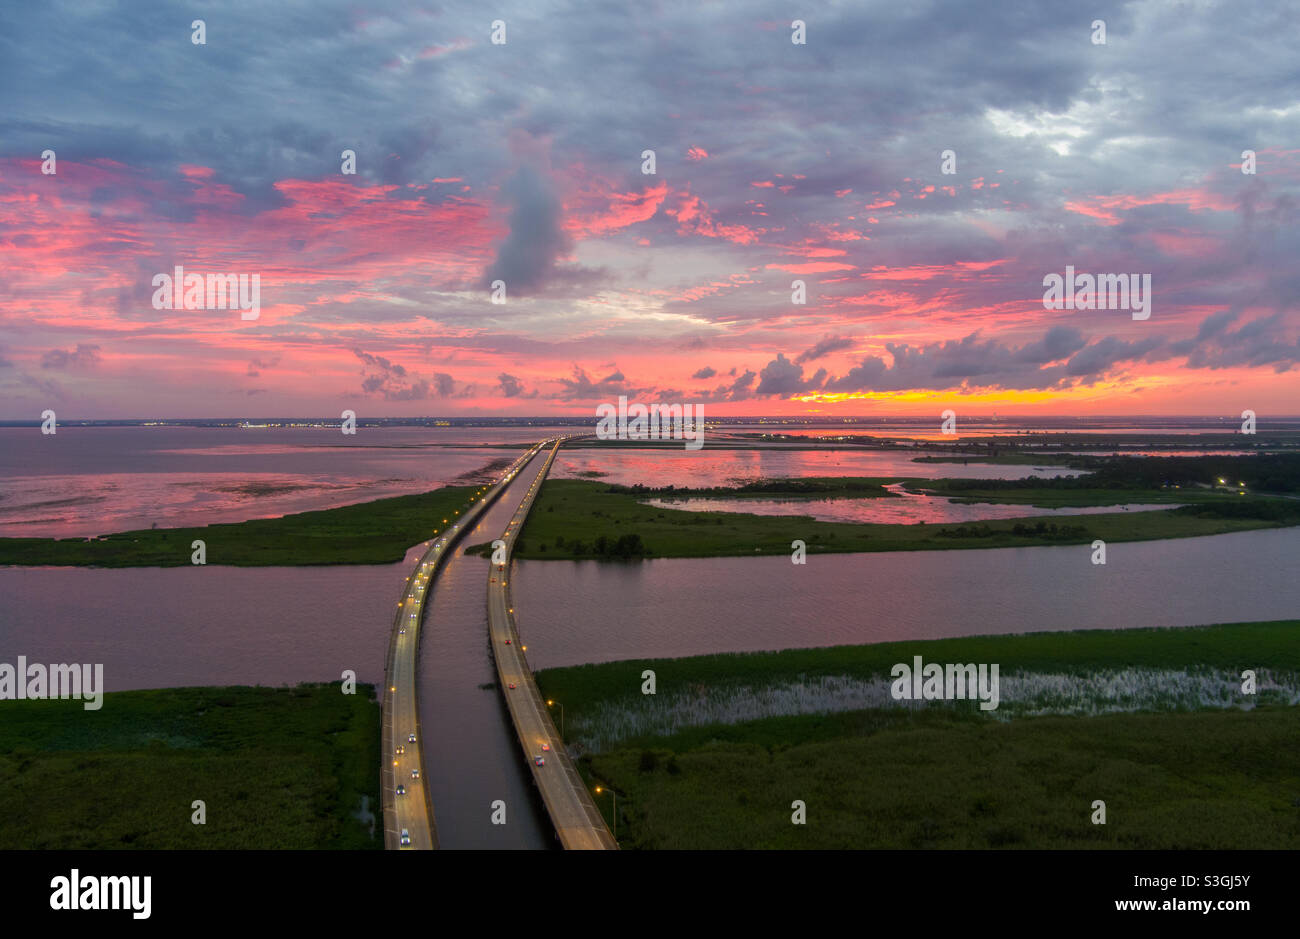 Gulf Coast at sunset Stock Photo